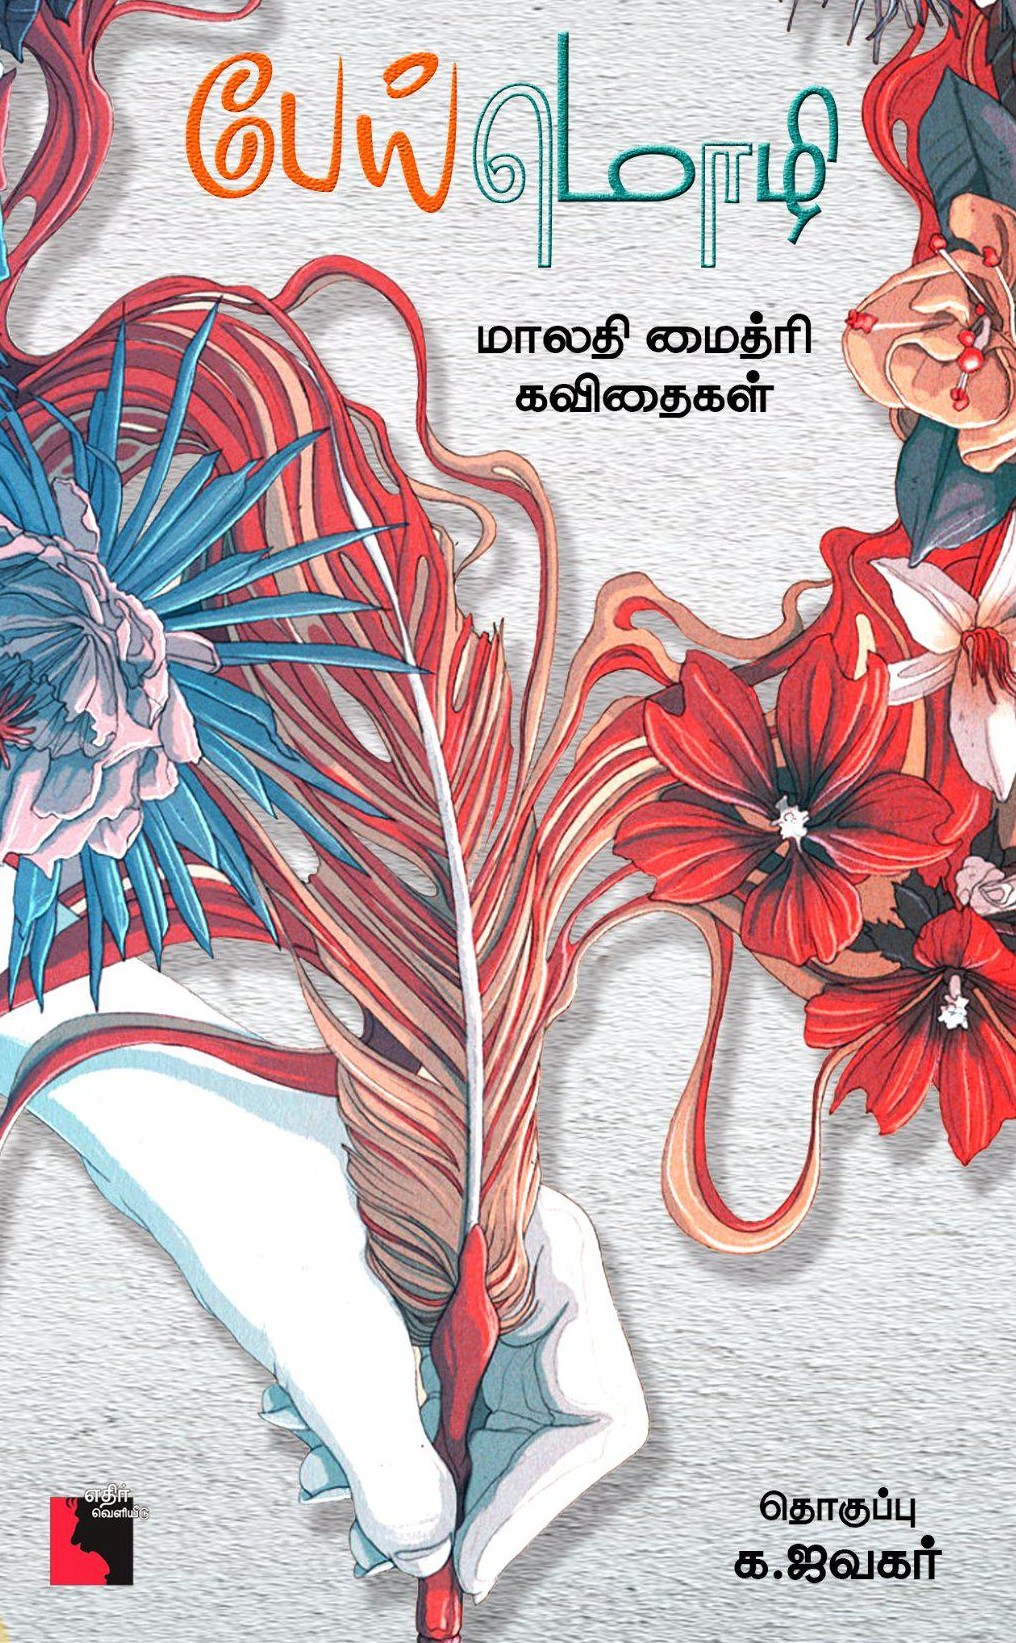 பேய் மொழி - மாலதி மைத்ரி கவிதைகள்book